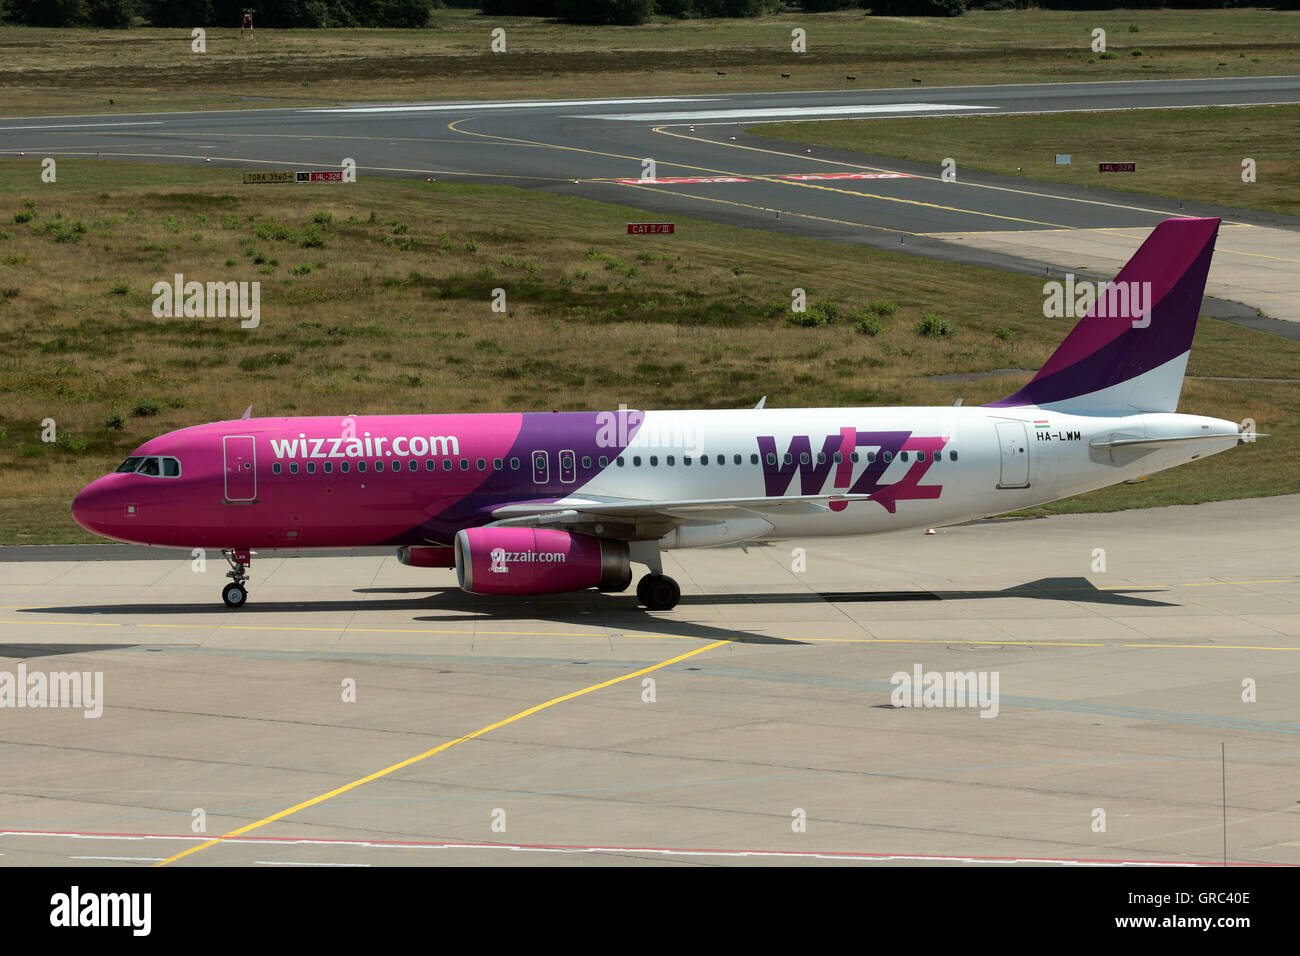 Airbus A320 Wizzair avec Ha-Lwm Inscription à la circulation au sol porte à l'aéroport de Cologne Banque D'Images